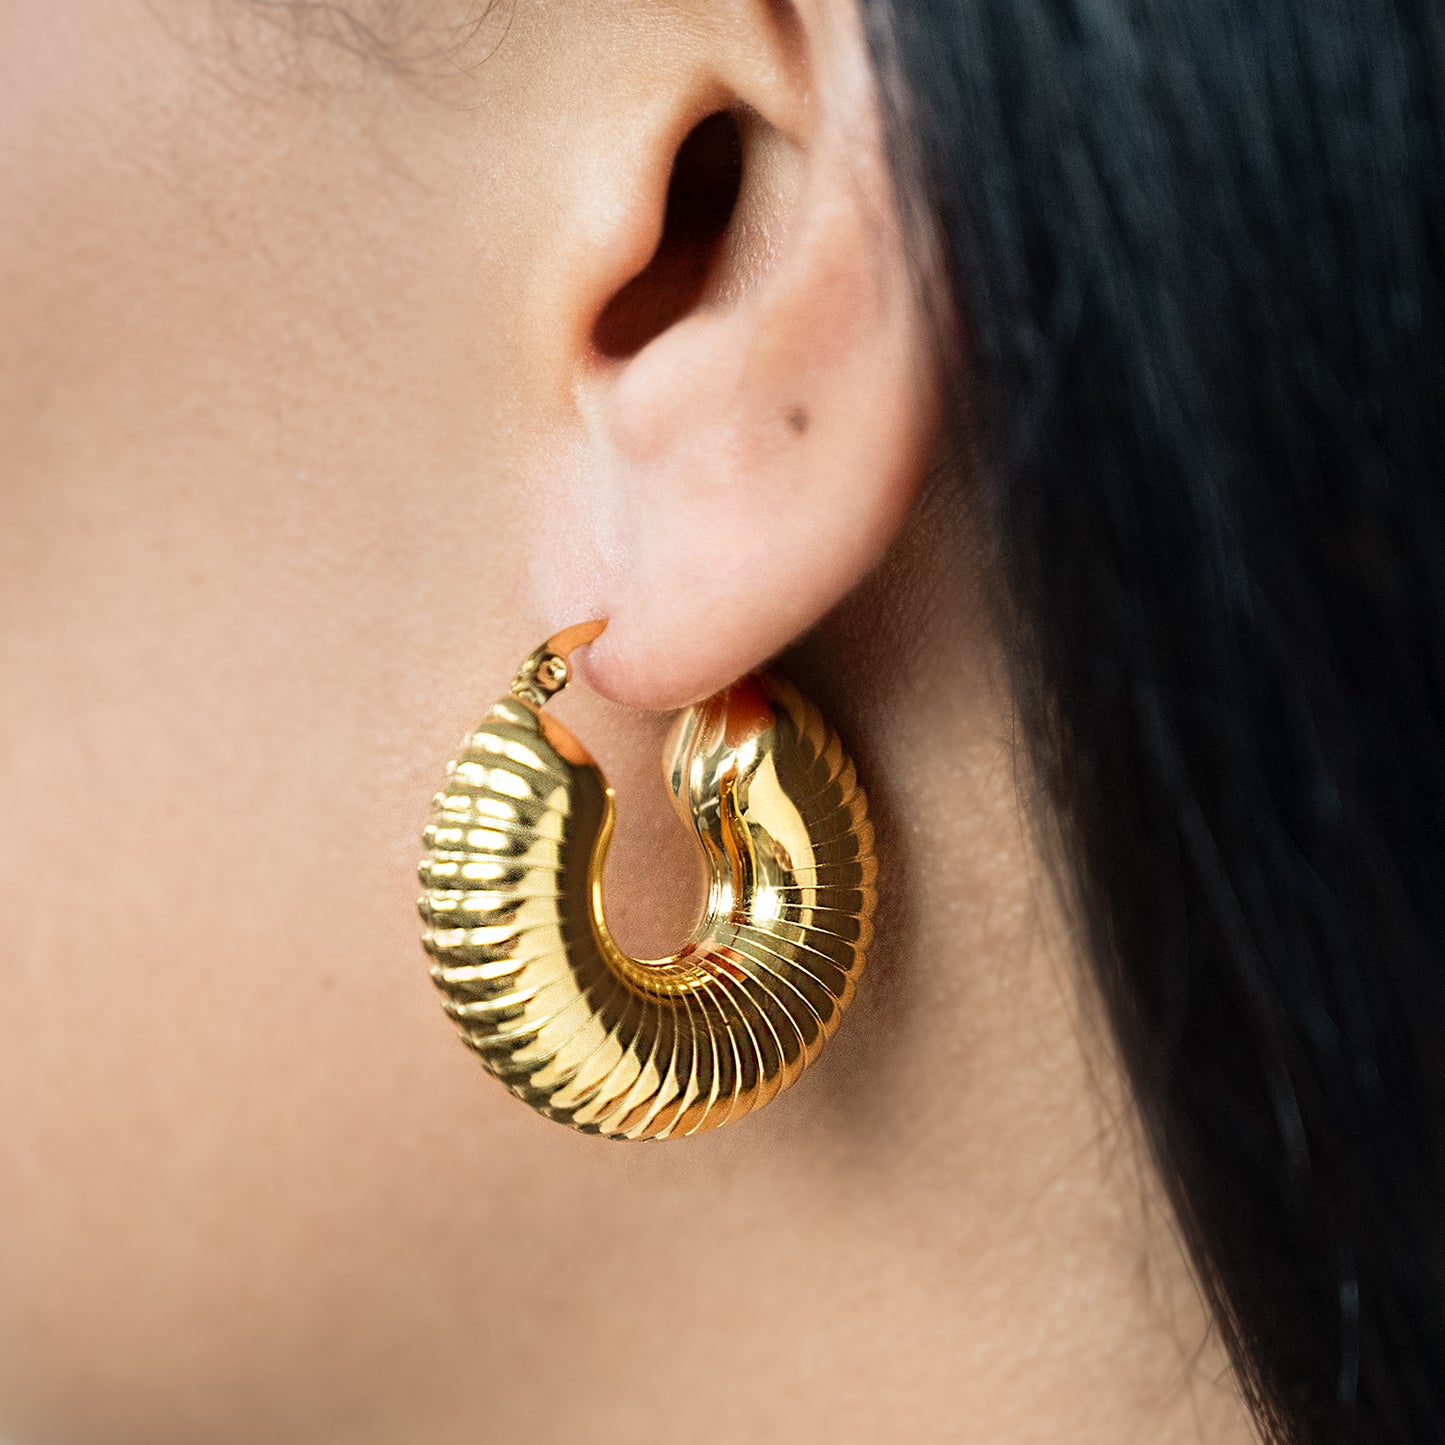 Chunky Shell Hoop Earrings Non Tarnish shown worn in a model's ear